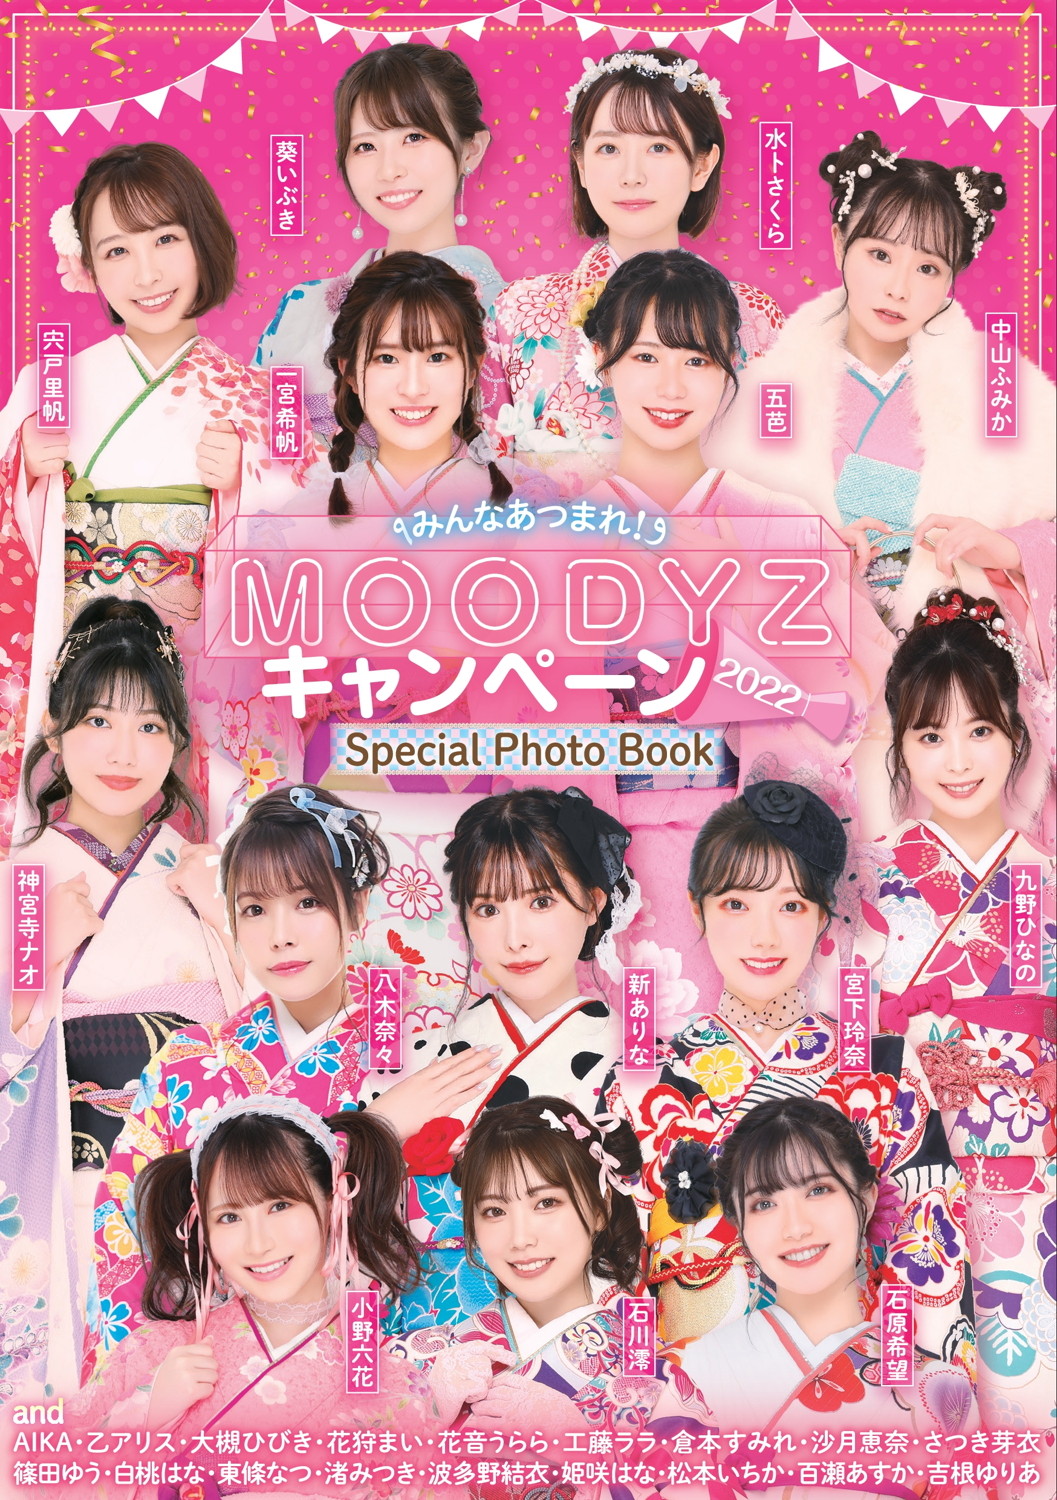 みんなあつまれ MOODYZキャンペーン2022 Special Photo Book post thumbnail image